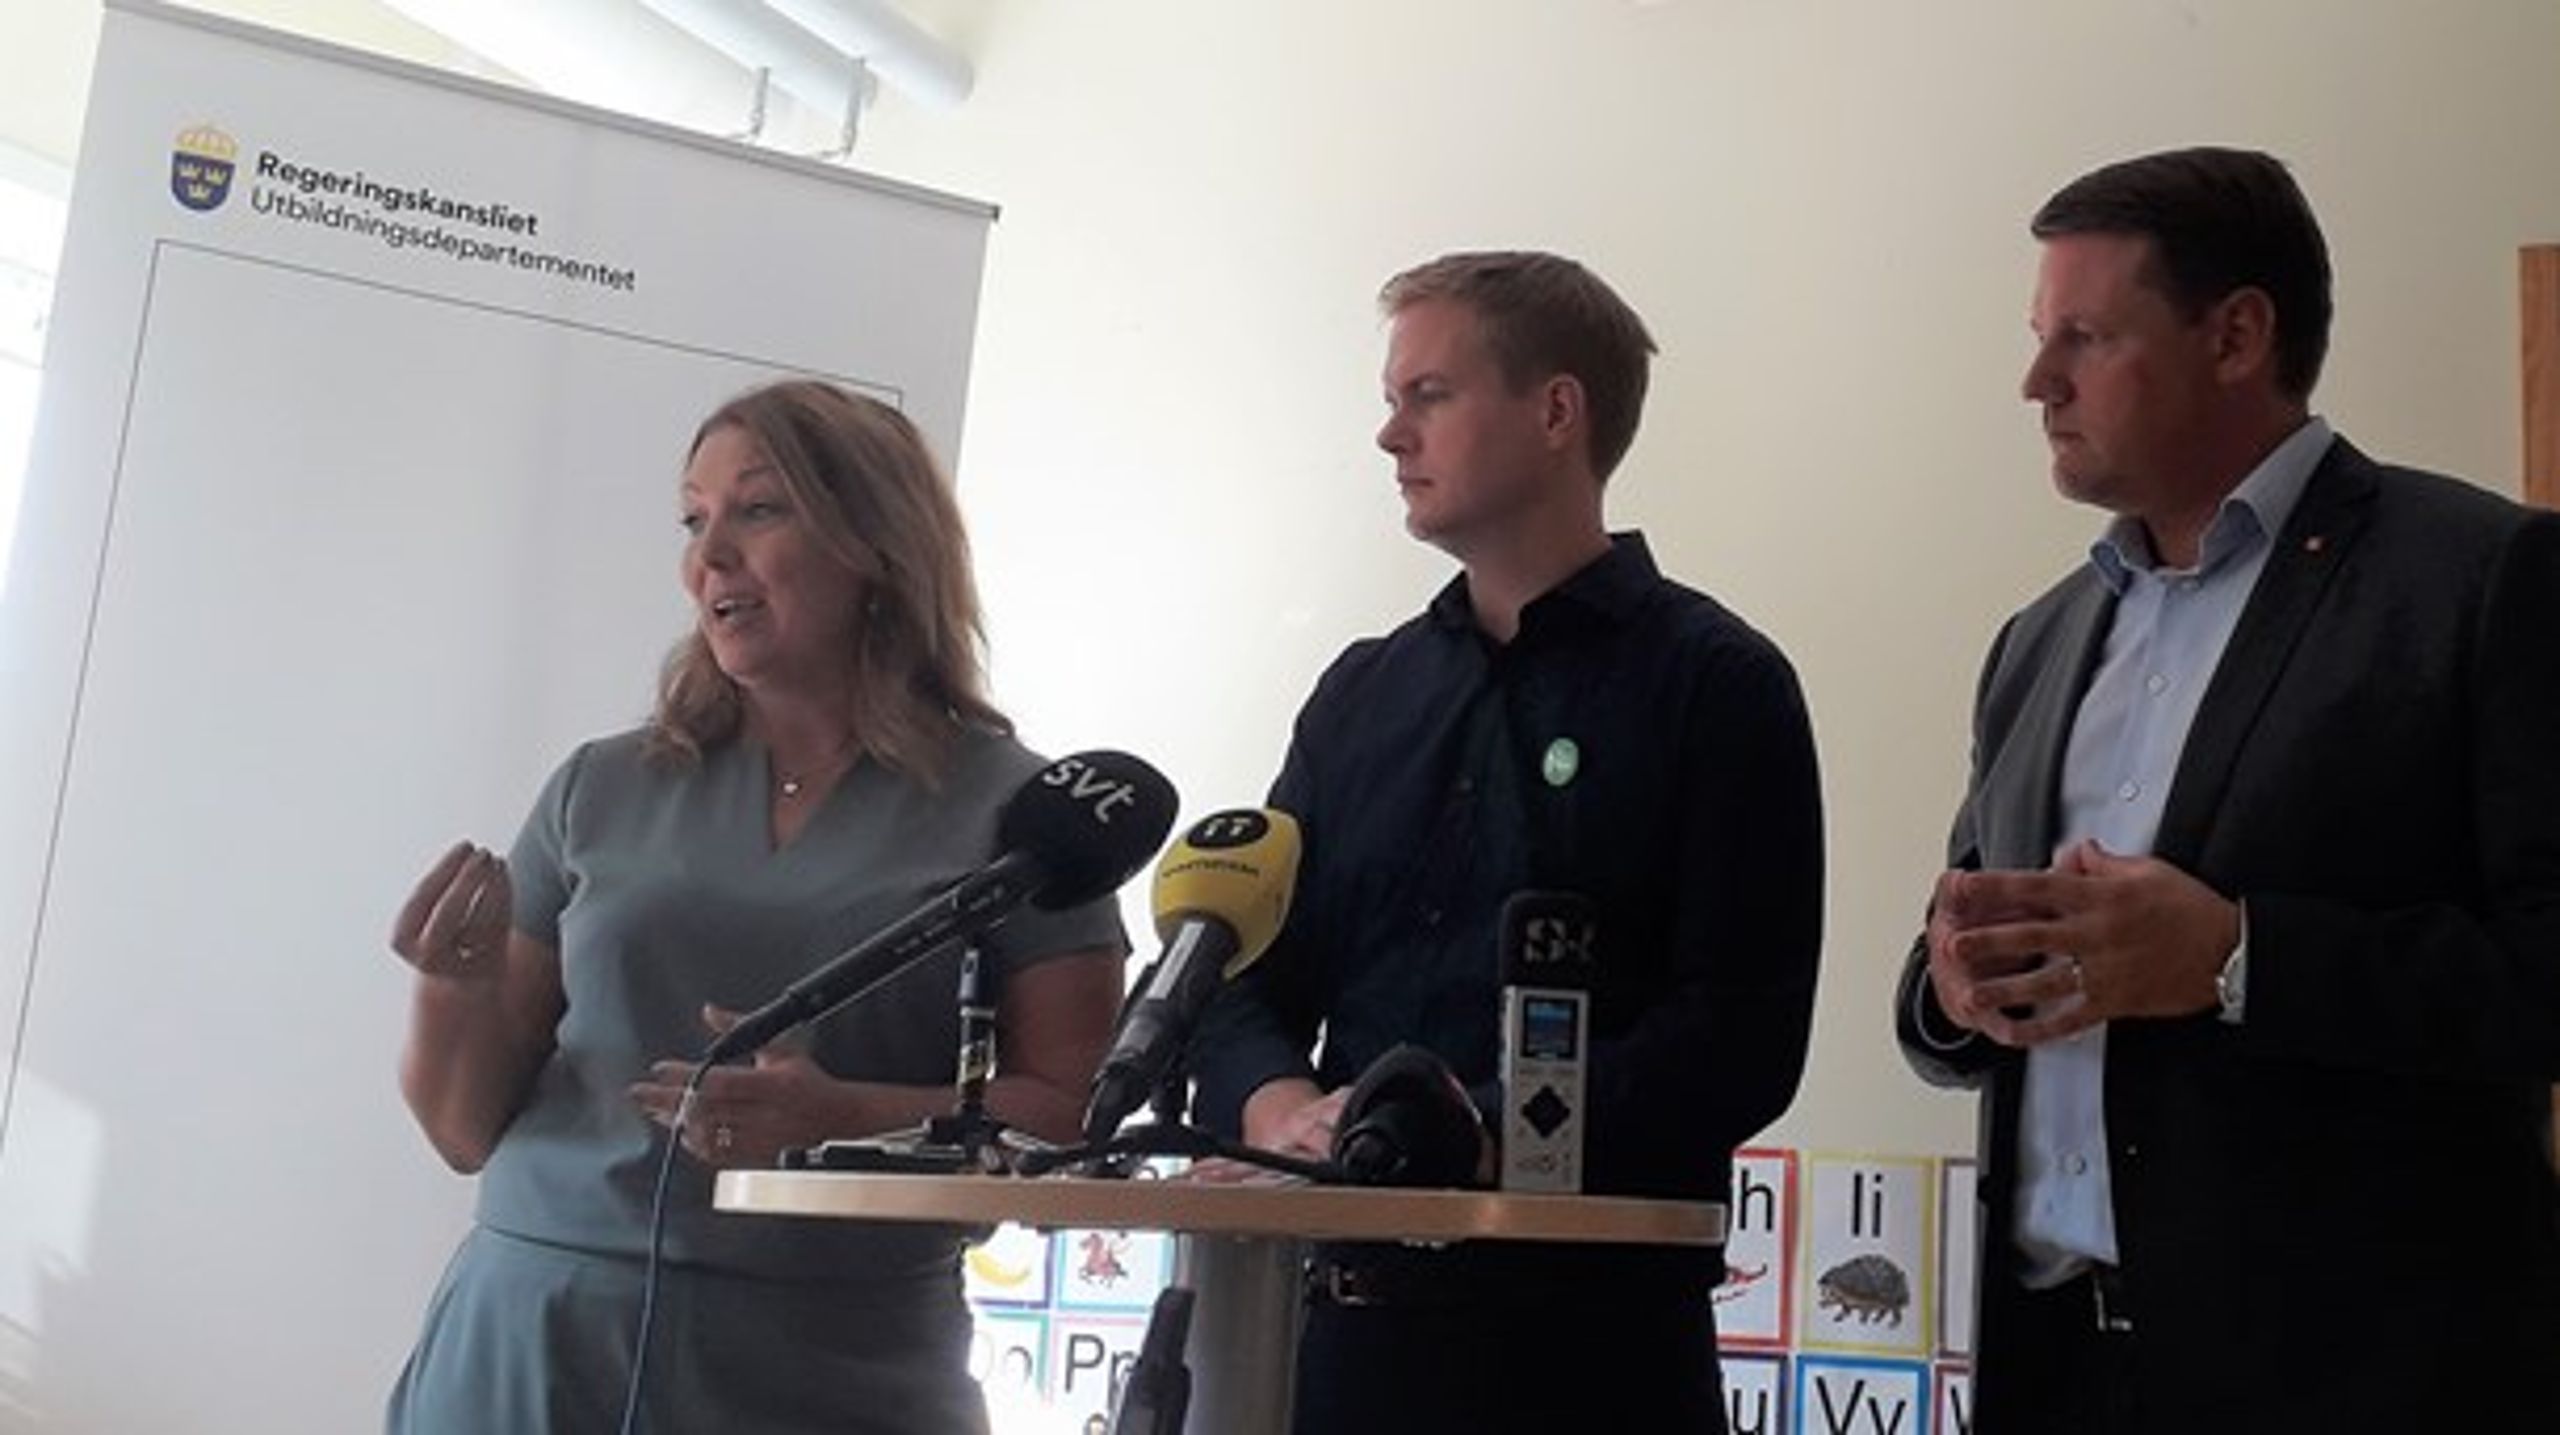 Lärarförbundets ordförande Johanna Jaara Åstrand, utbildningsminister Gustav Fridolin och Kommunals ordförande Tobias Baudin på presskonferensen för den nya läroplanen.